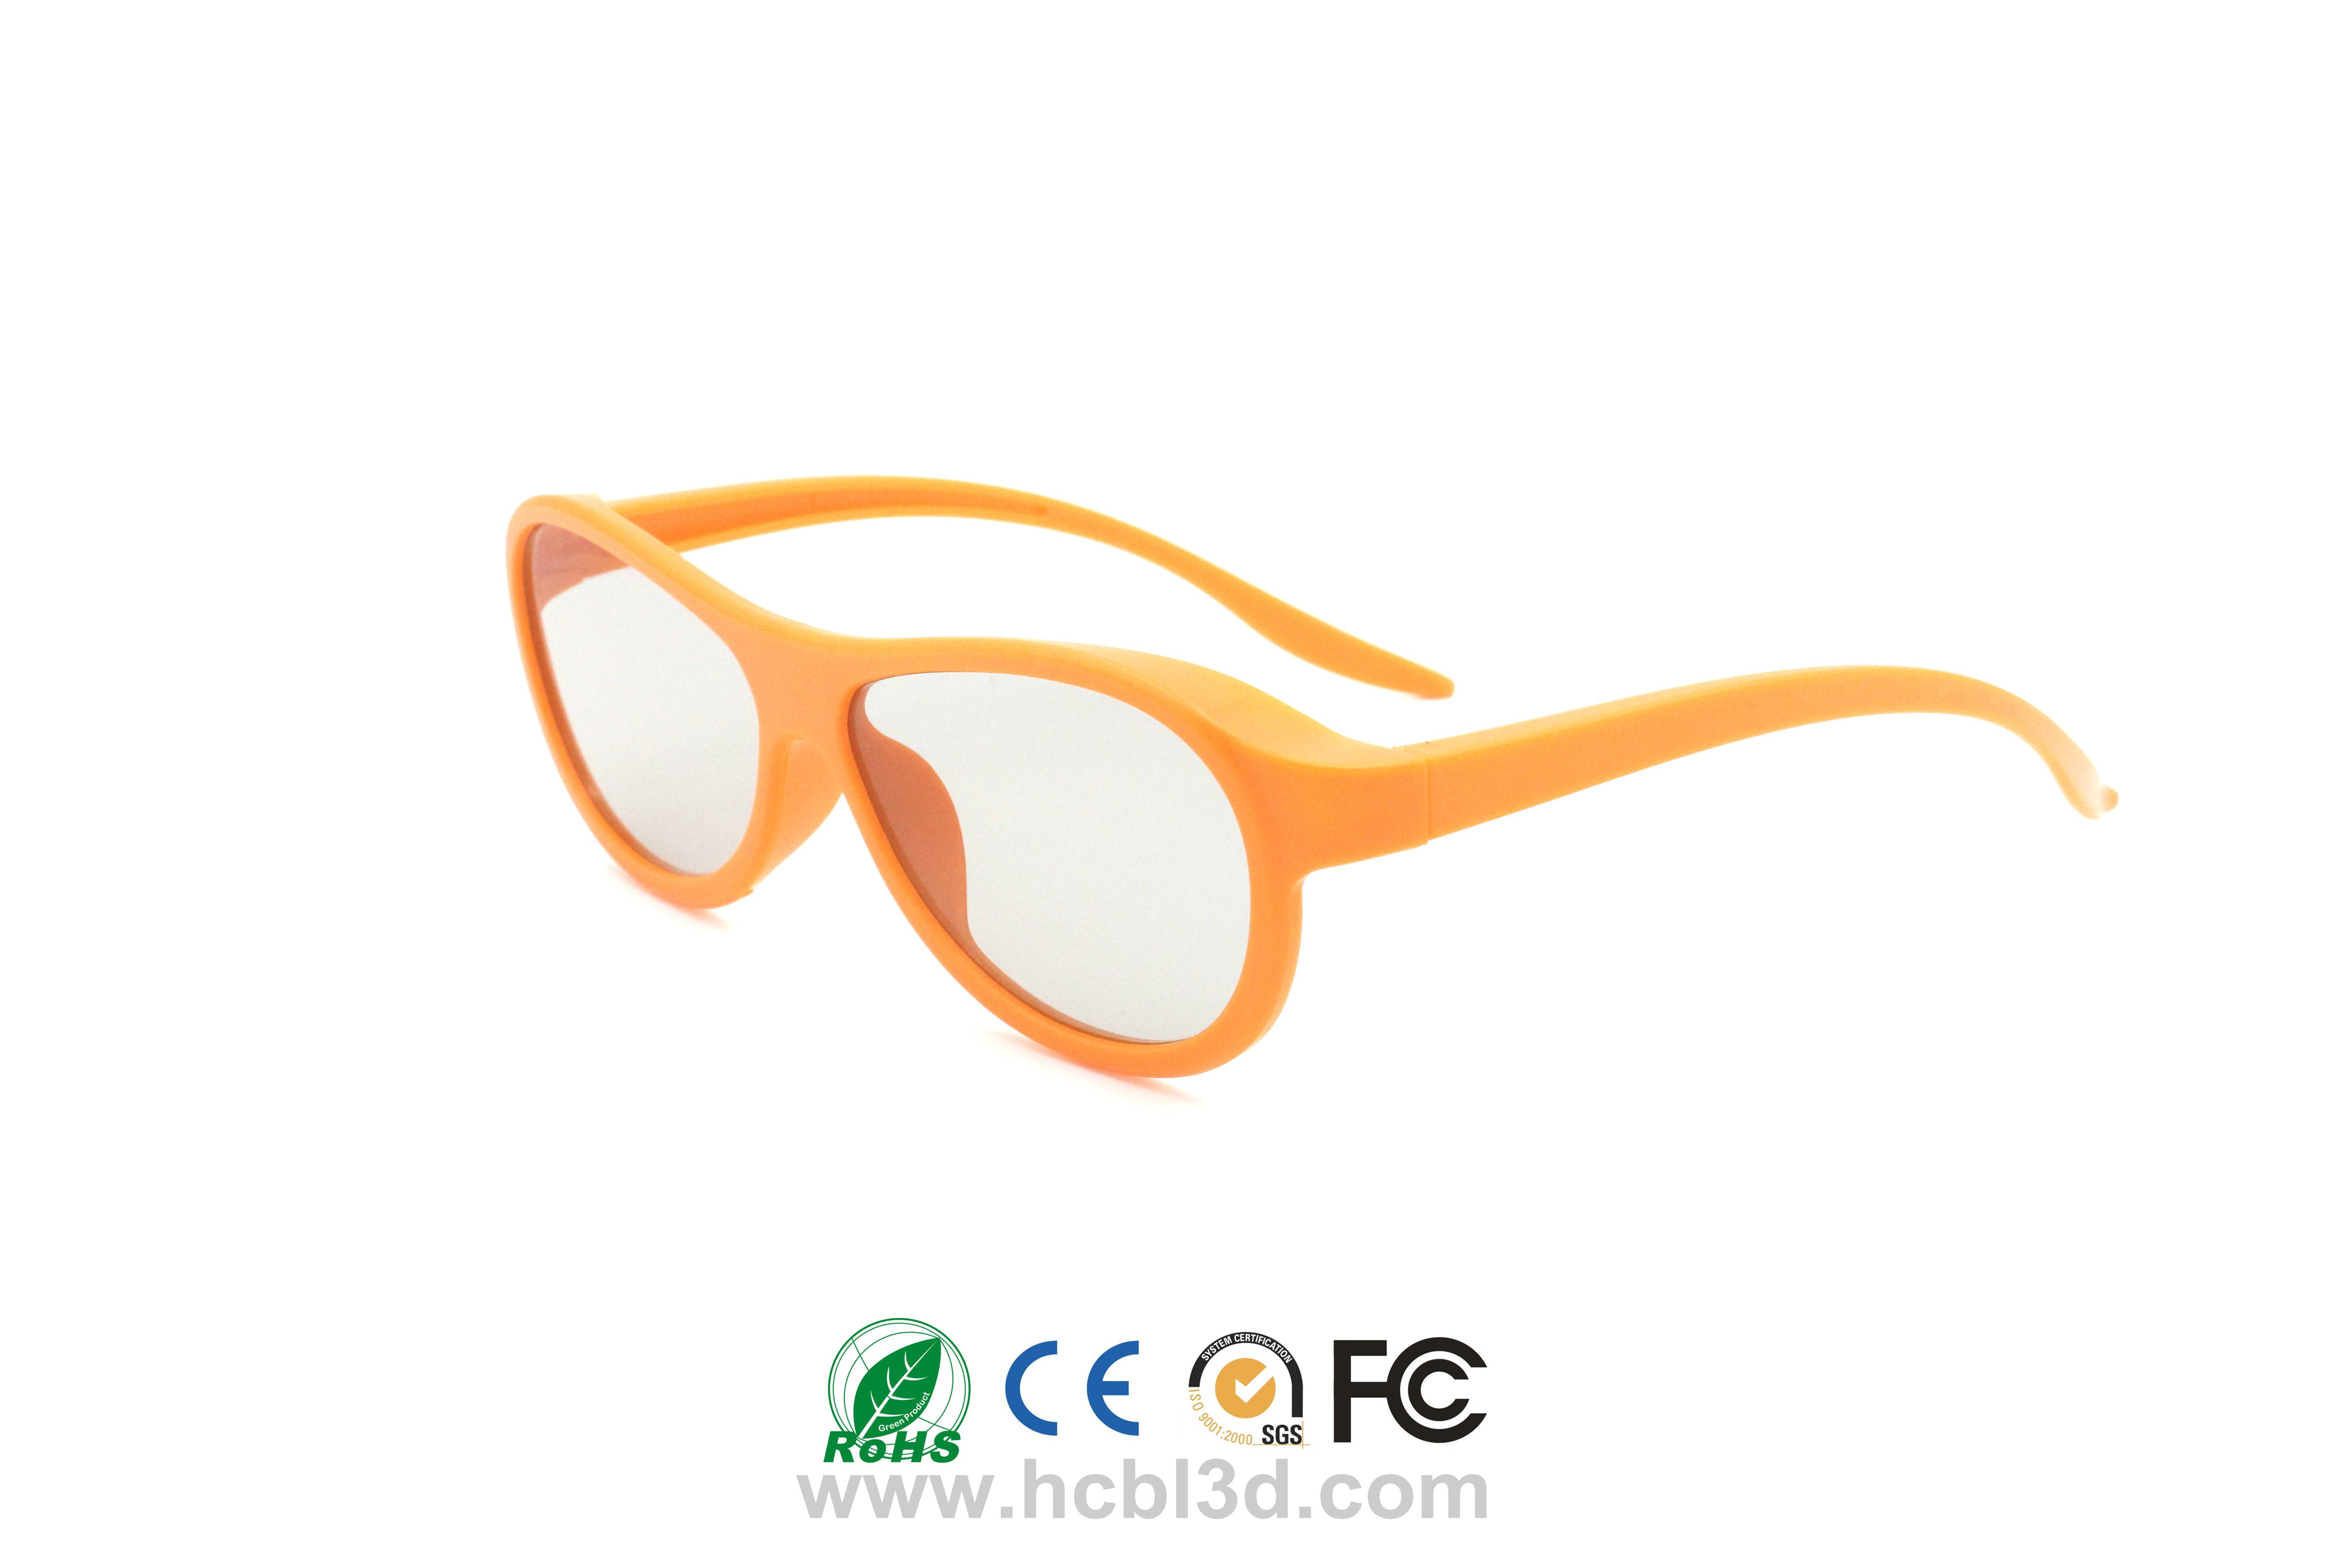 Gafas 3D pasivas desechables con montura de ABS naranja para adultos y niños